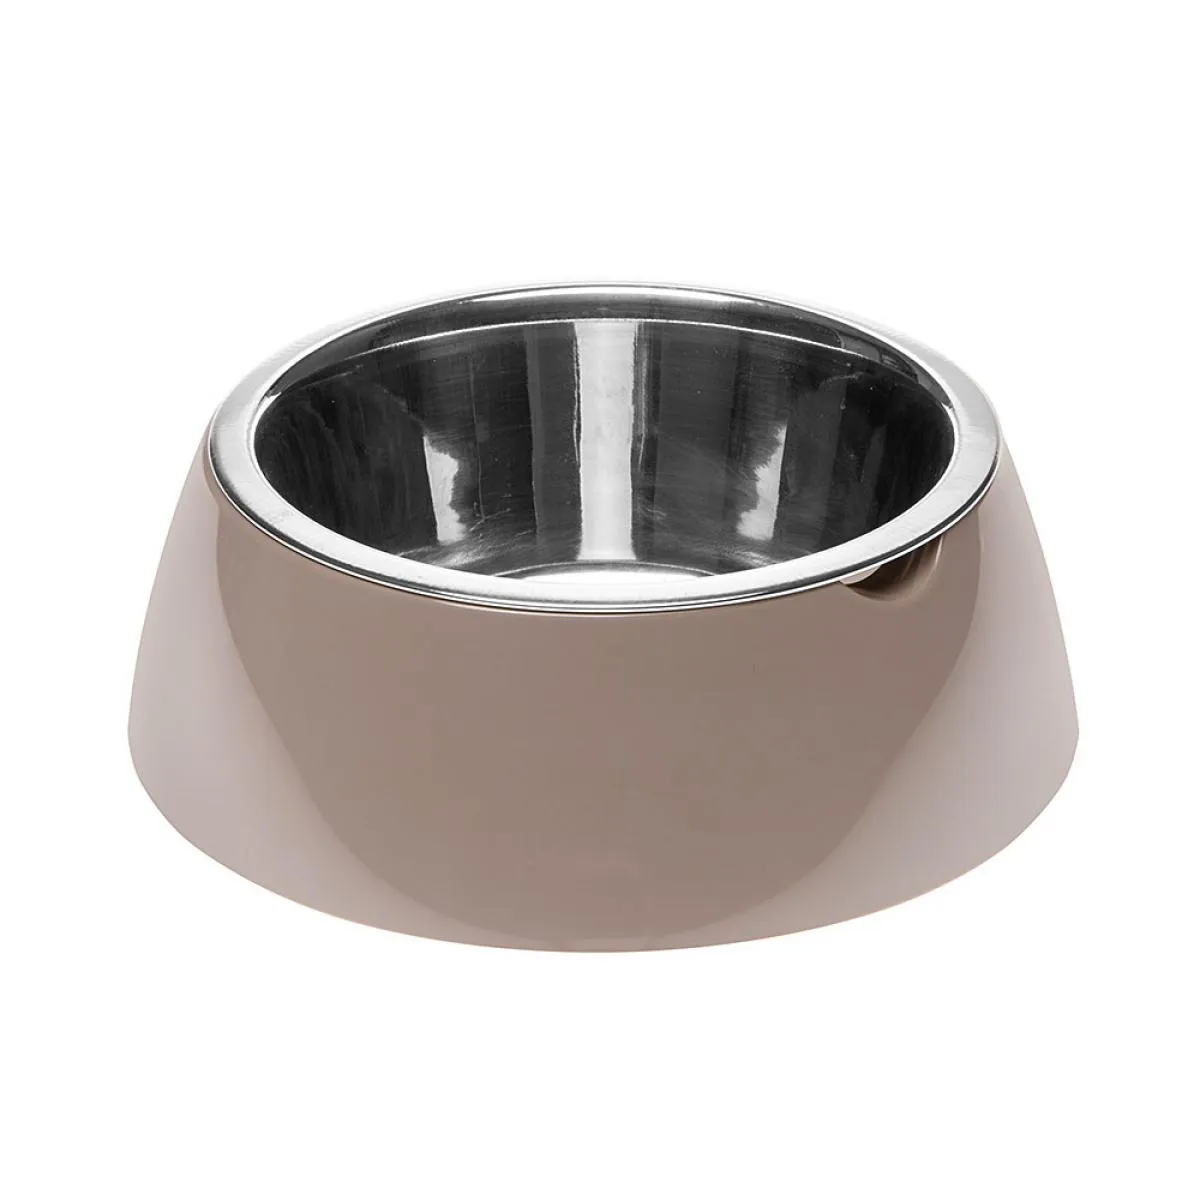 Ferplast Jolie Small - Метална купа за храна и вода за кучета и котки,  0,5л. цвят беж